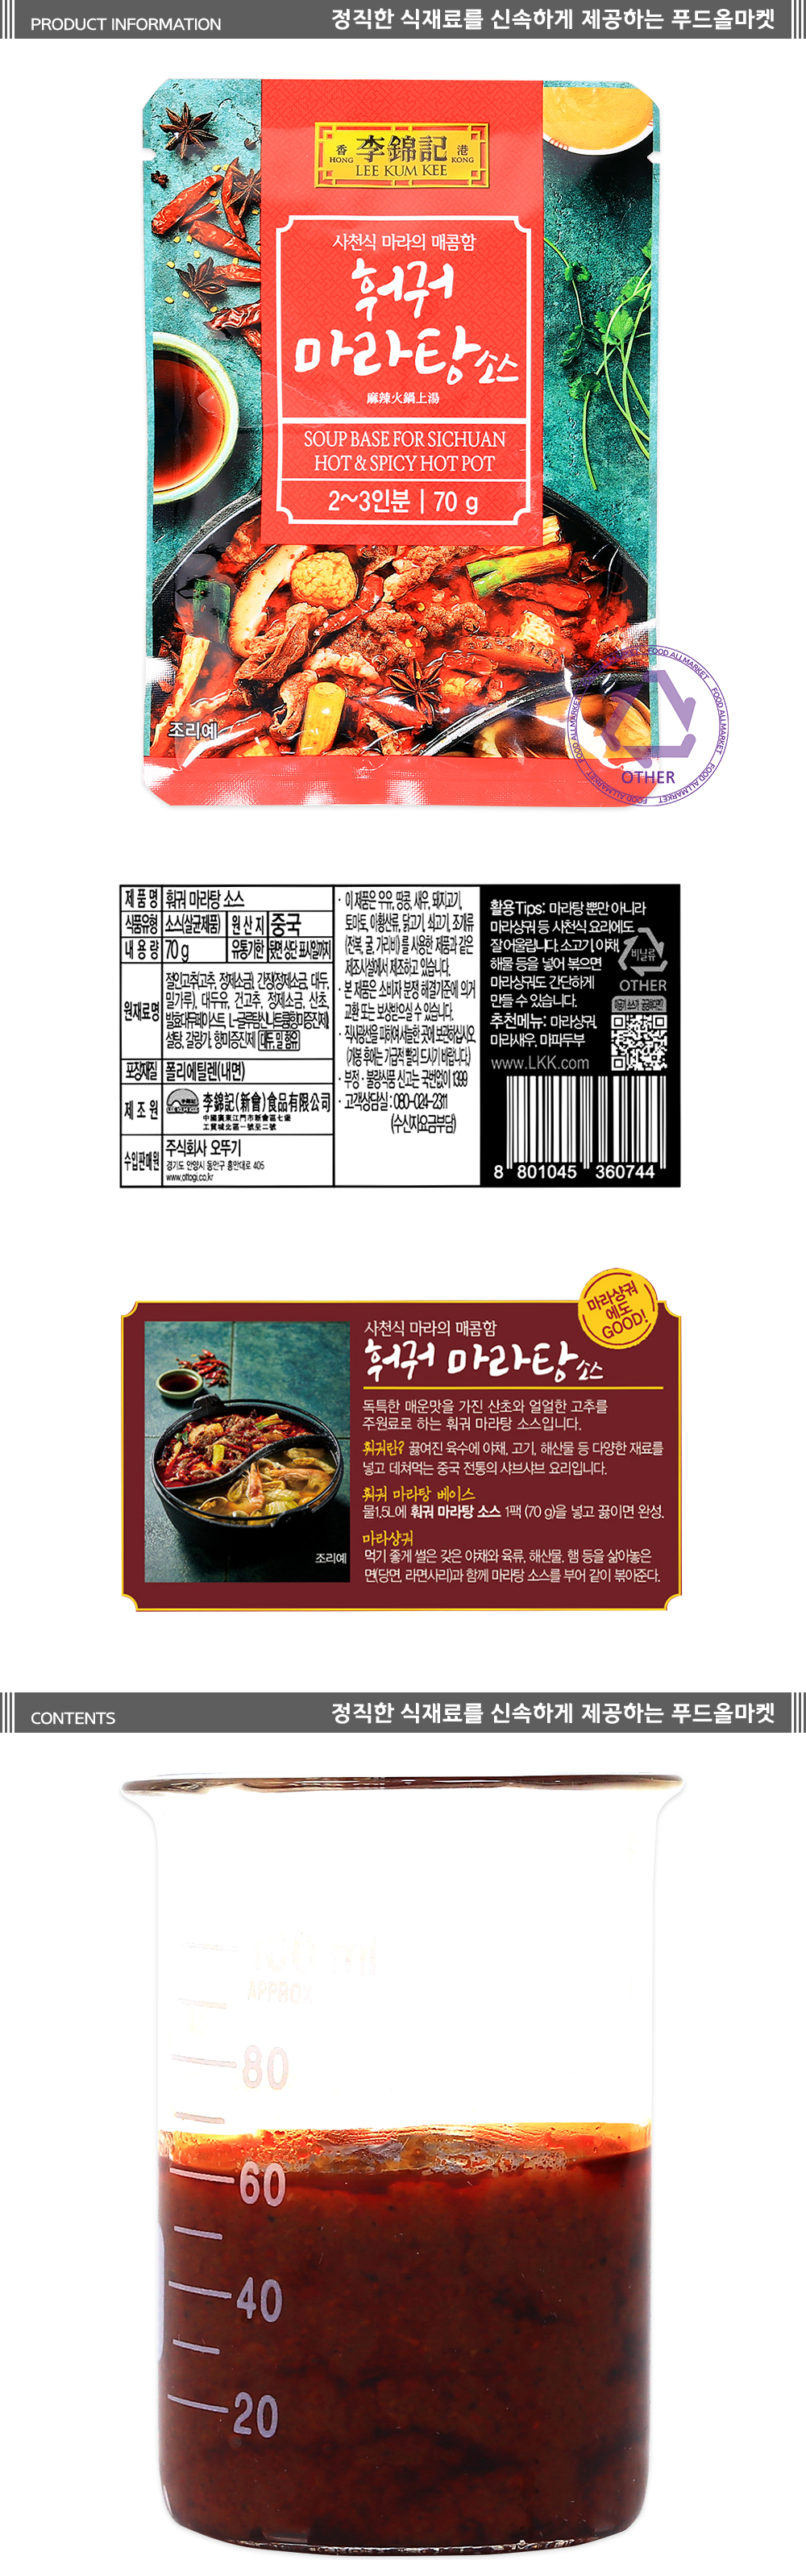 韓國食品-[Leekumkee] Soup Base for Sichuan Hot & Spicy Hotpot 70g